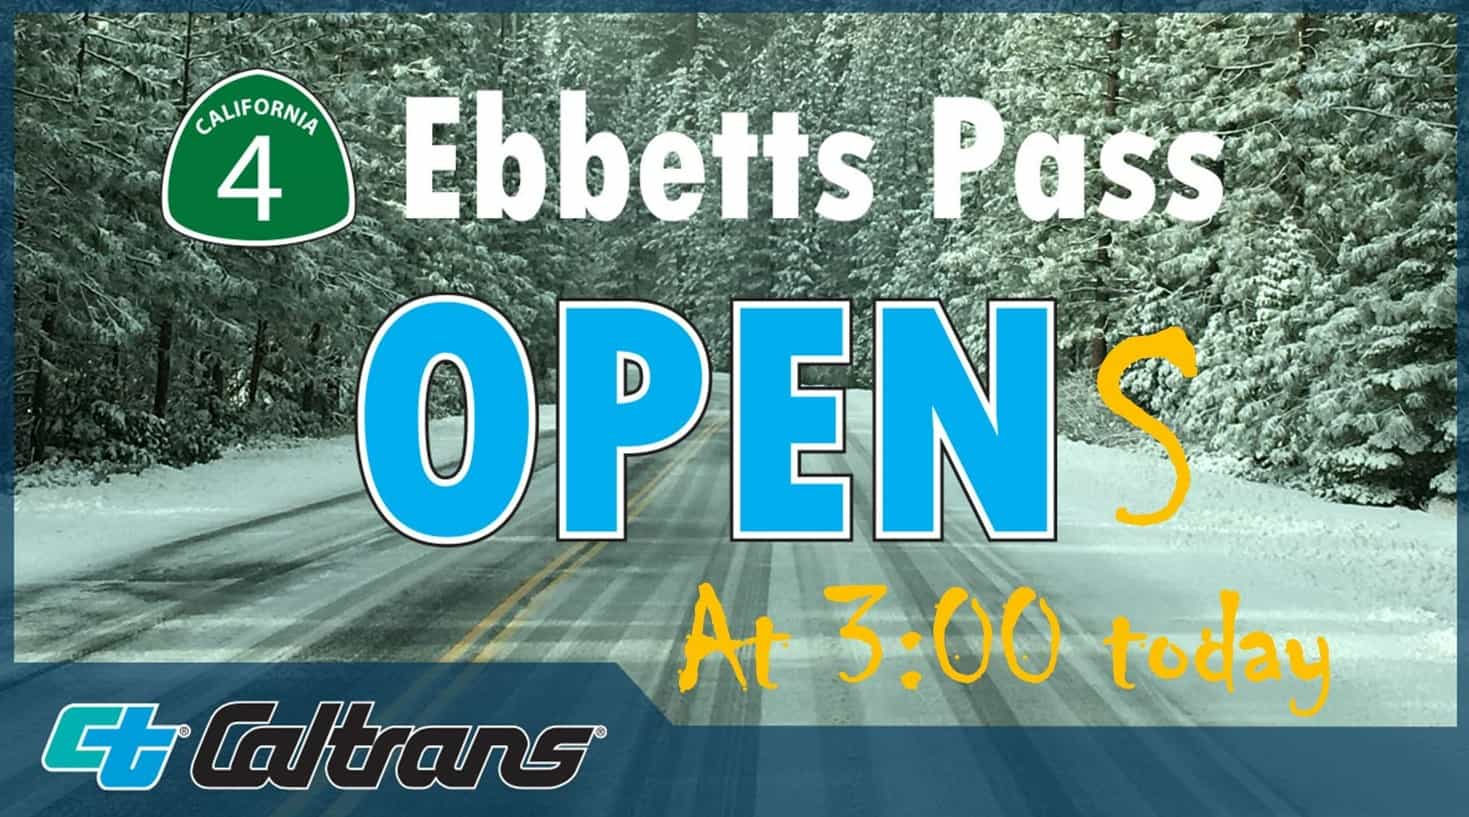 ebbetts Pass, open, california